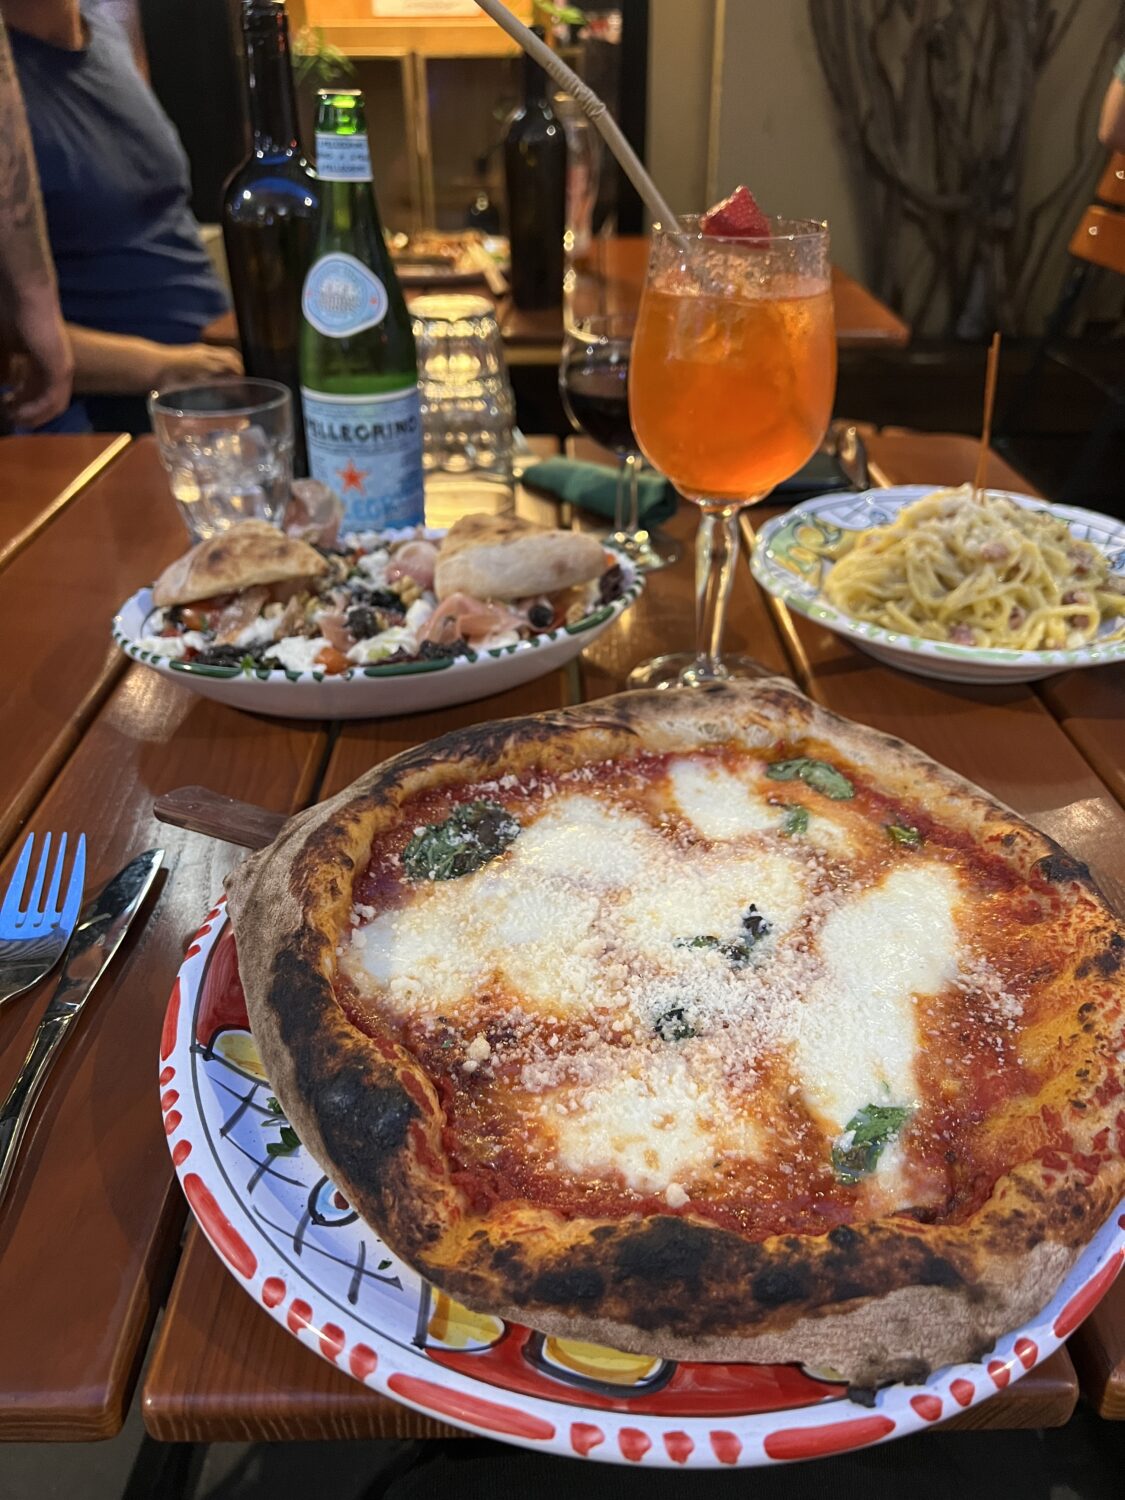 Mamma Pizza Dronningens Osteria Italiana